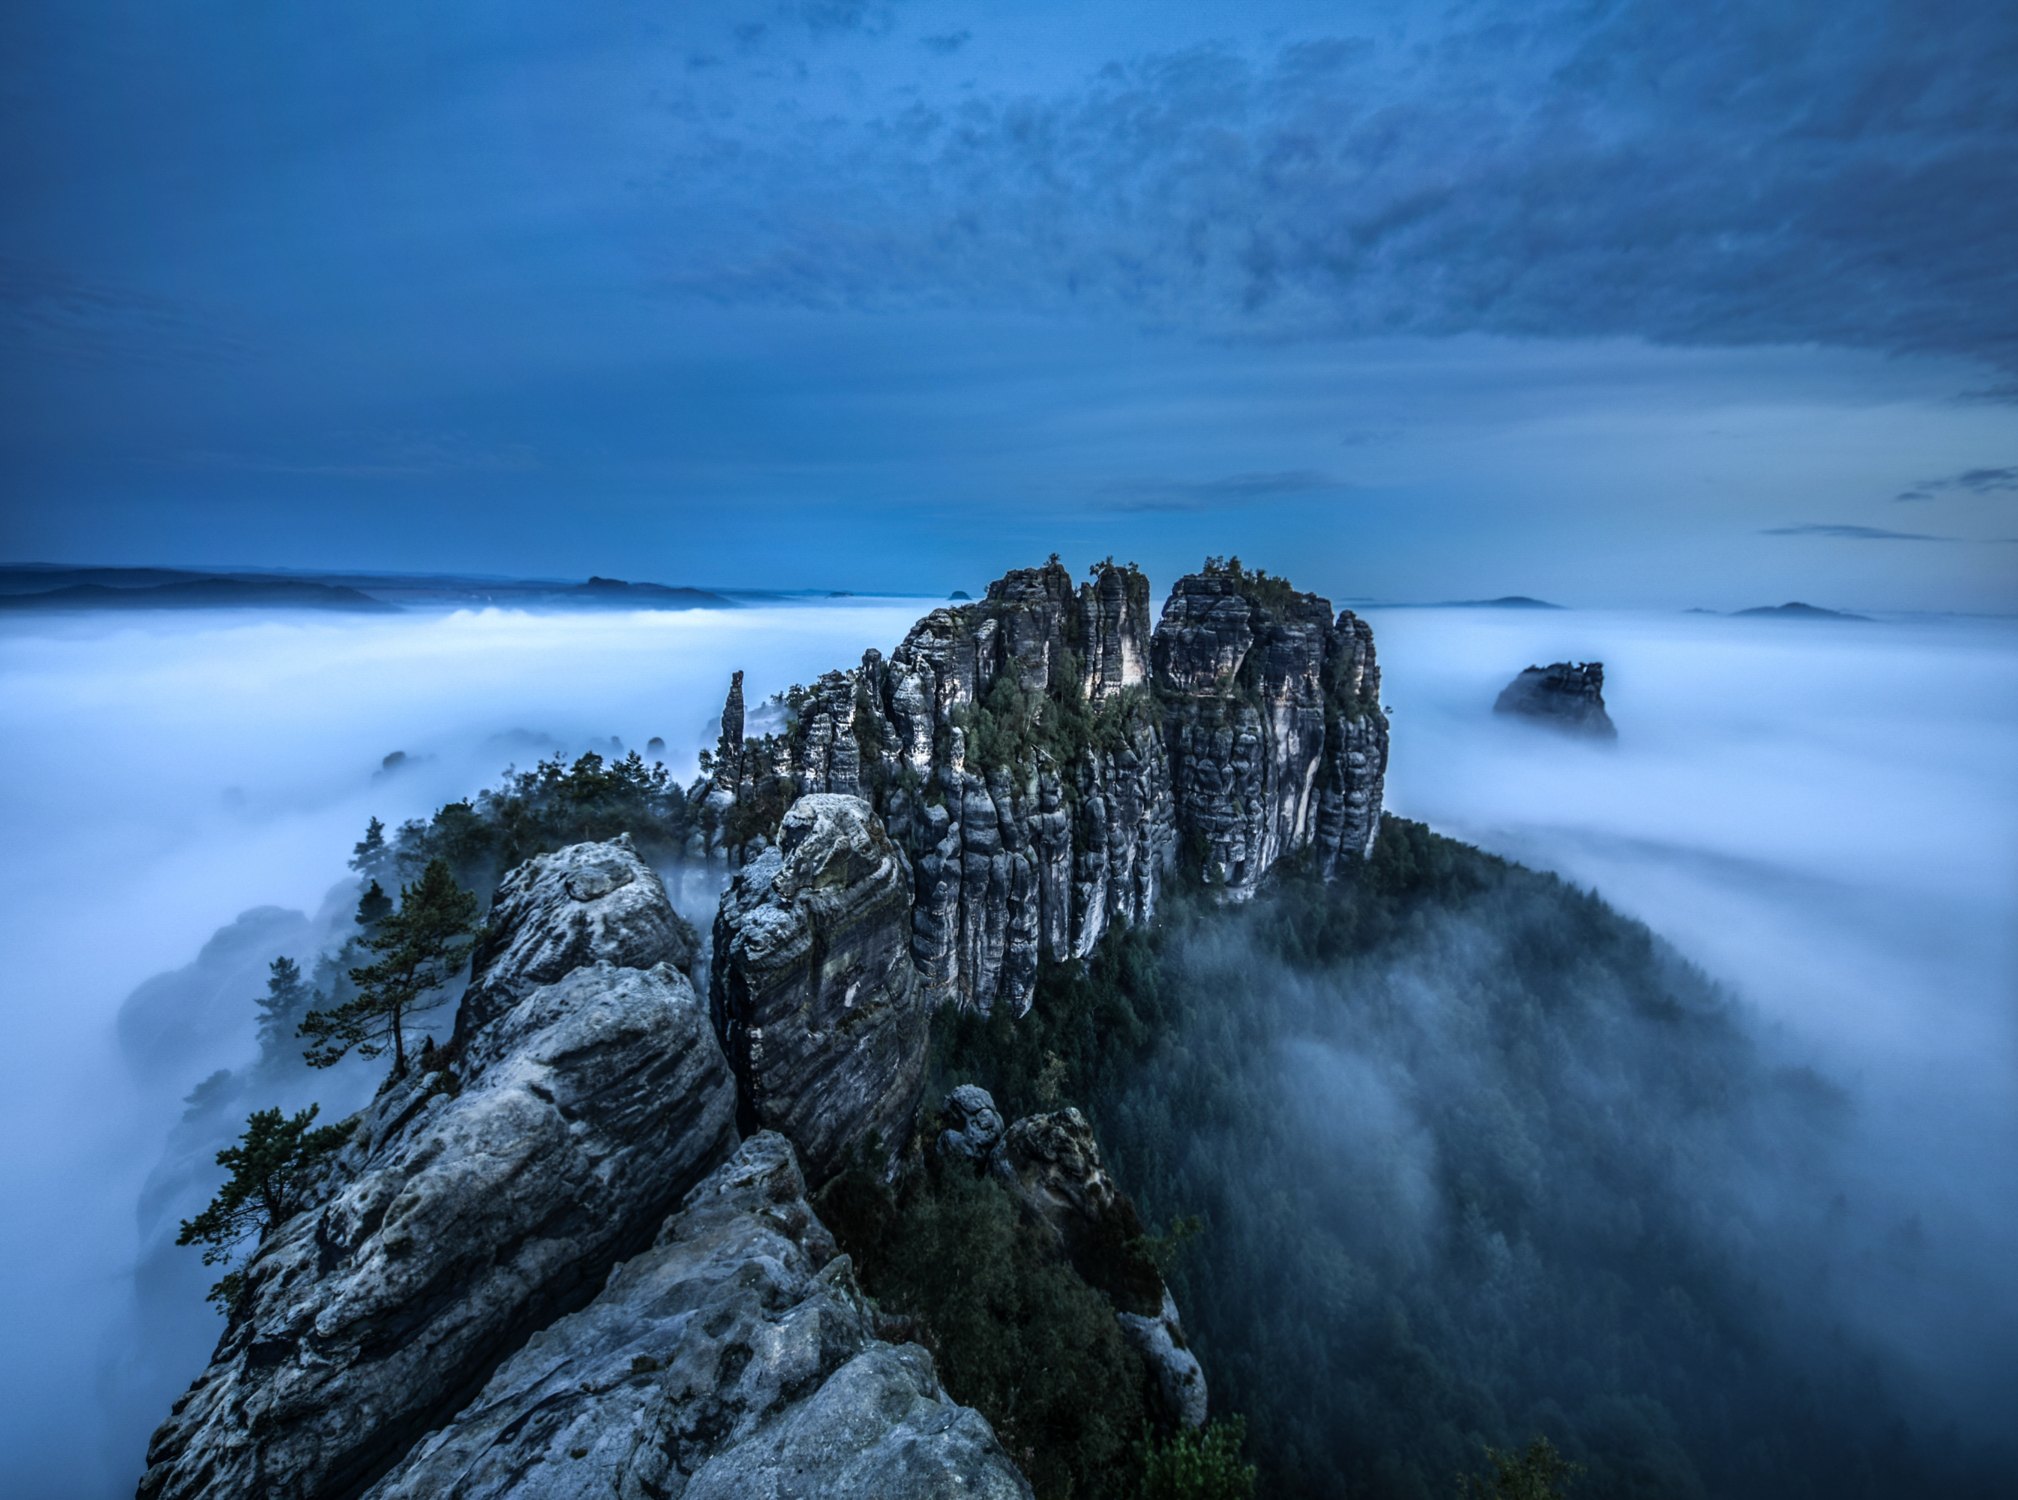 Fotografie von Felsen der sächsischen Schweiz. Rund um die wabern Wolken und Nebel, die den Blick auf den Boden verdecken.